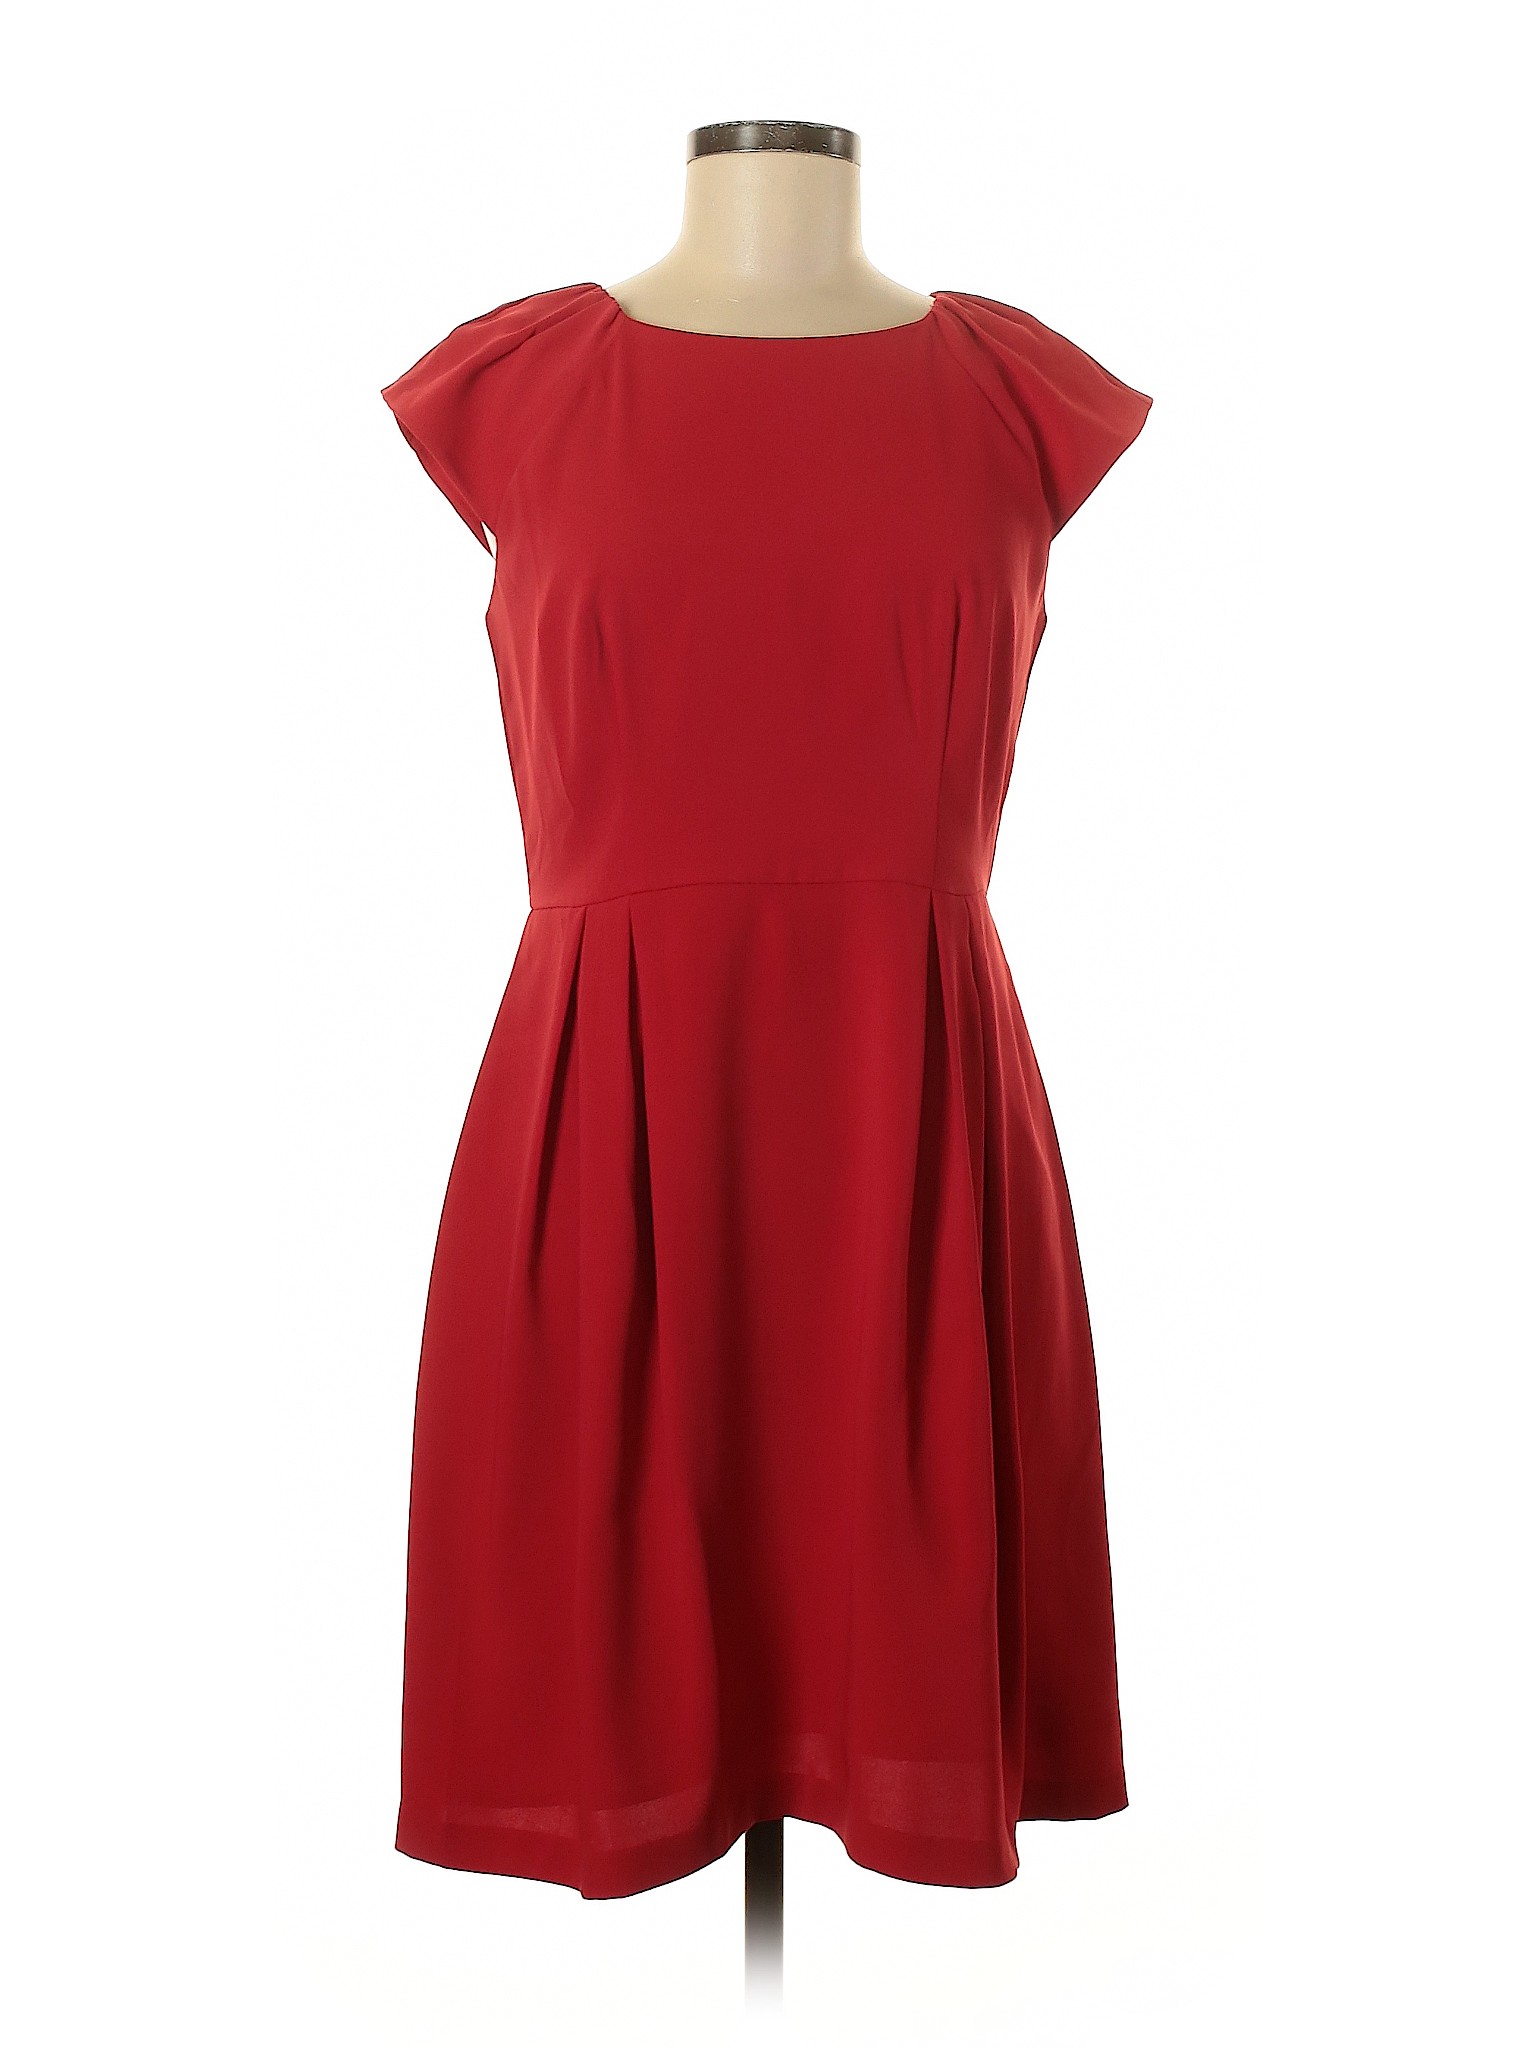 Ann Taylor LOFT Women Red Casual Dress 8 Petite | eBay